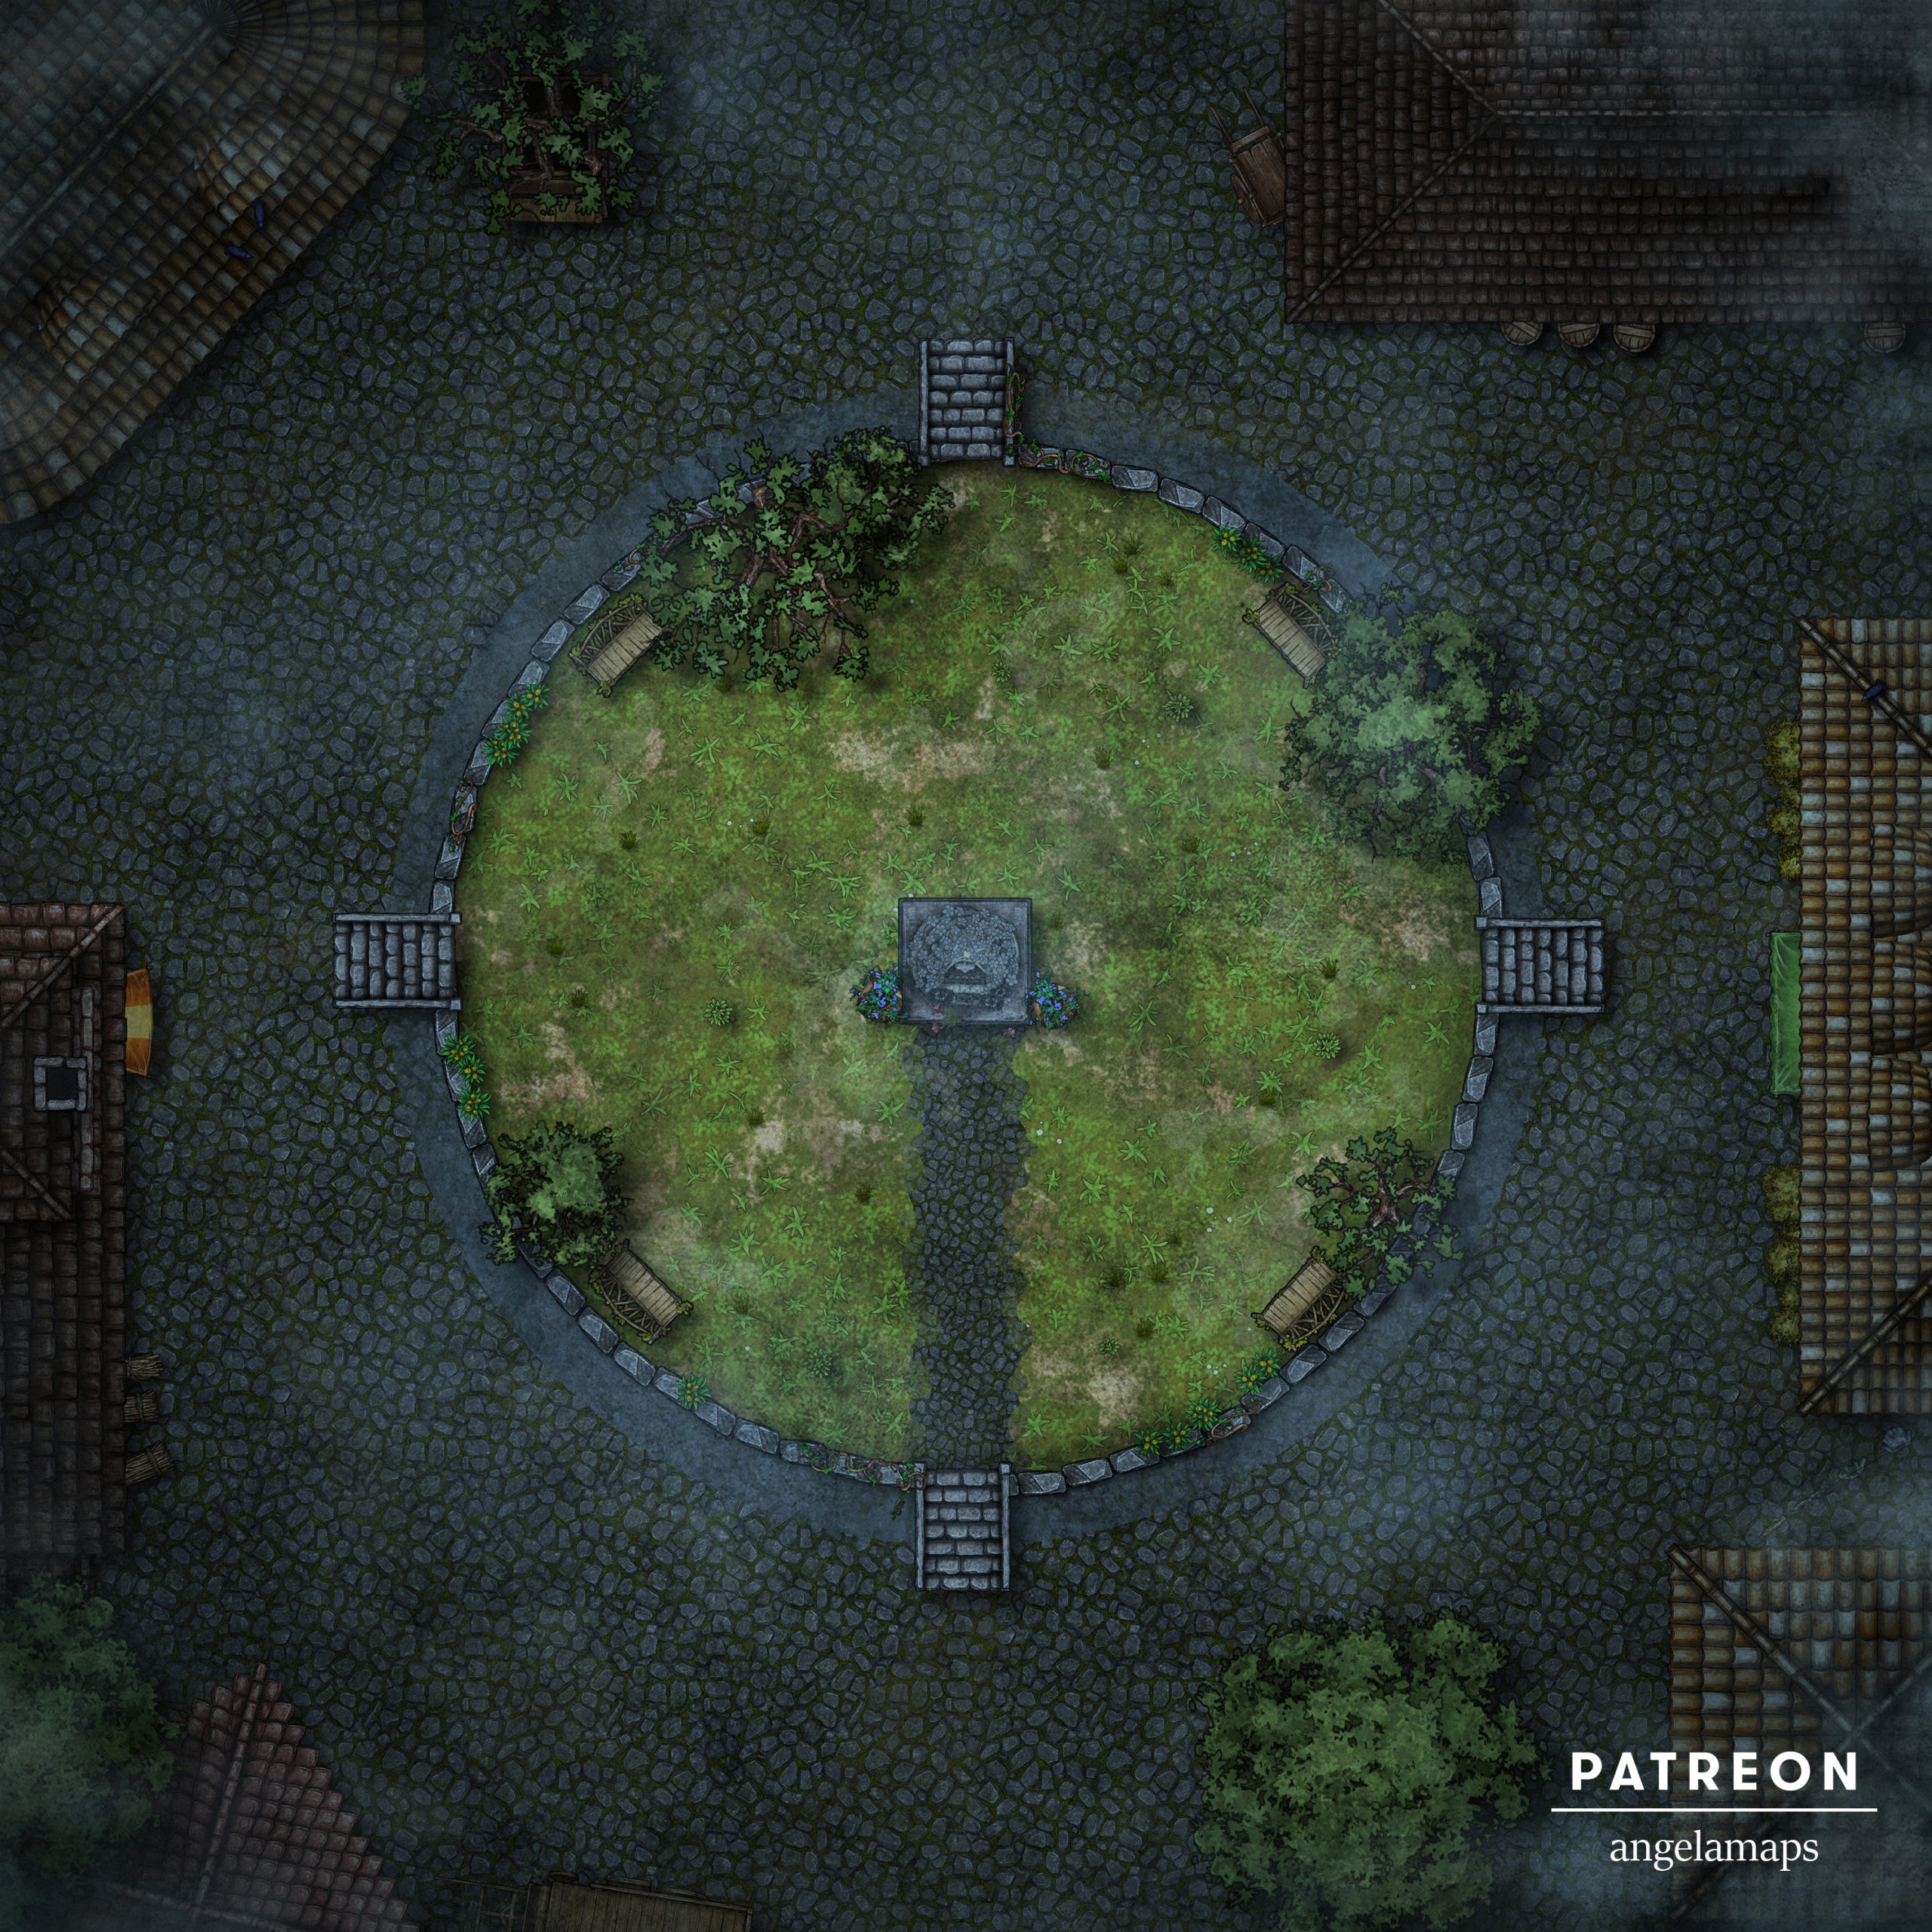 Elven Forest 2 - Map Pack, Battlemaps